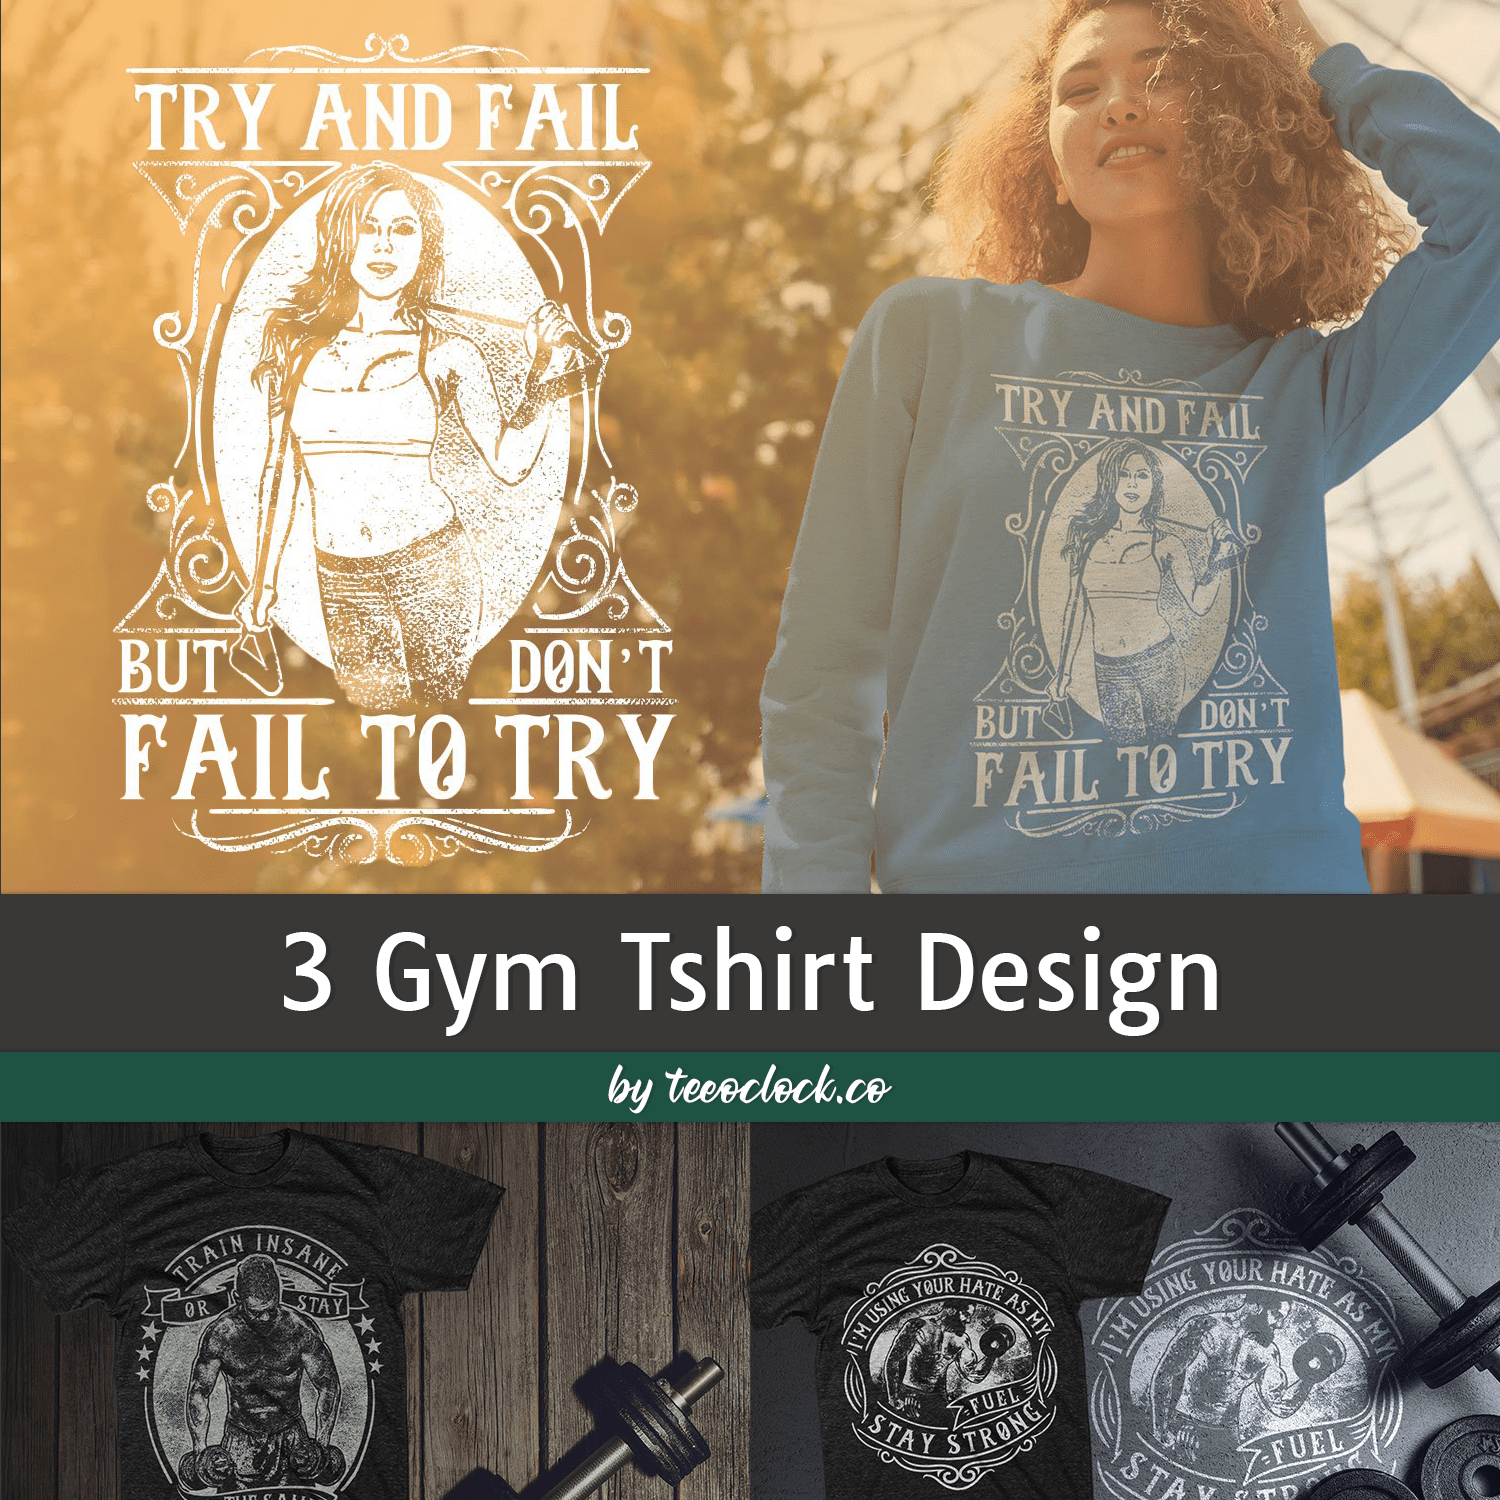 3 Gym Tshirt Design cover.